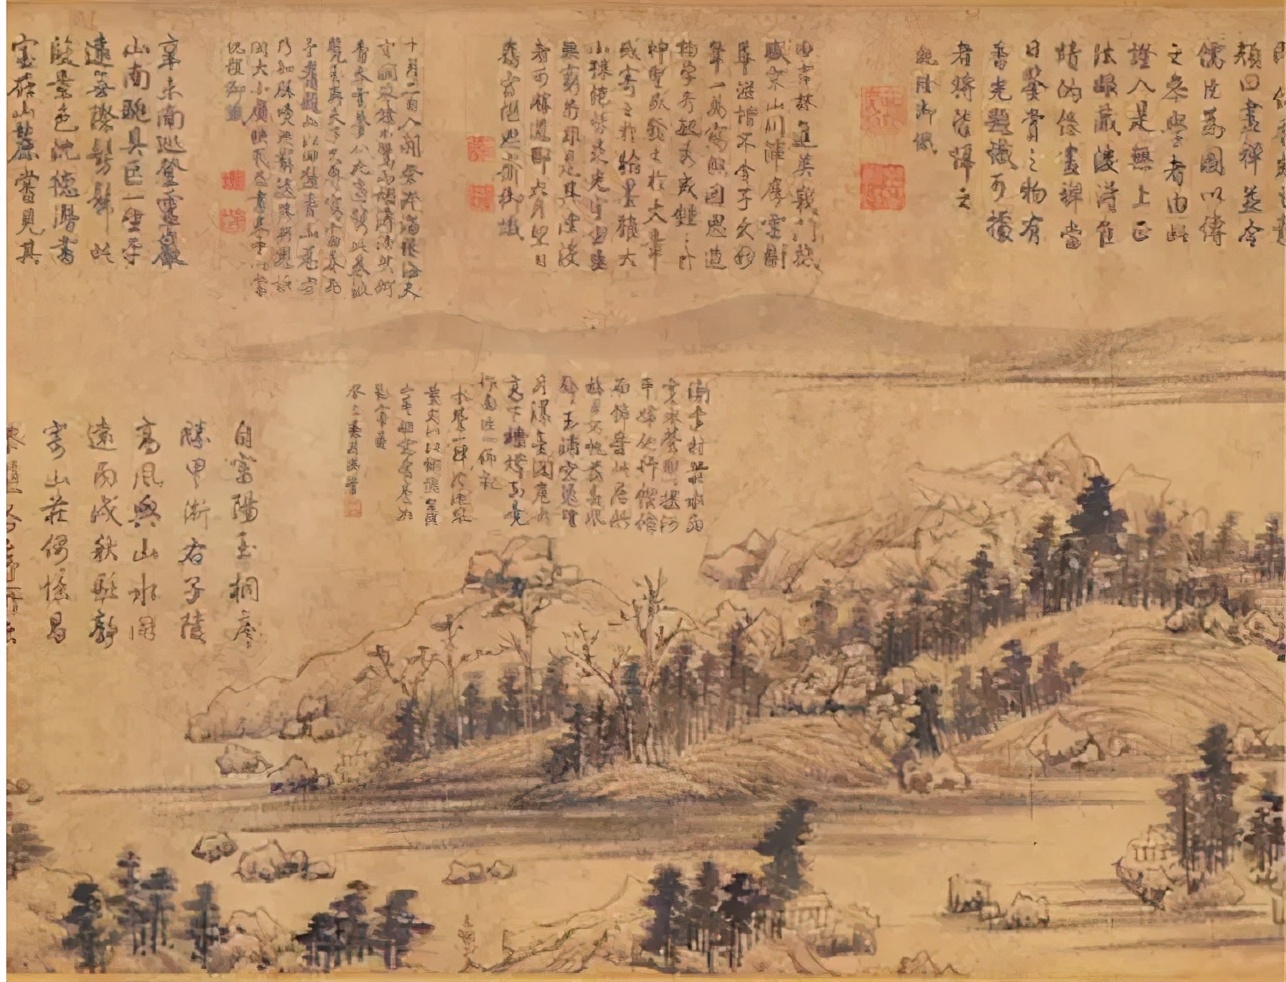 传世名画《富春山居图》,流转世间600年